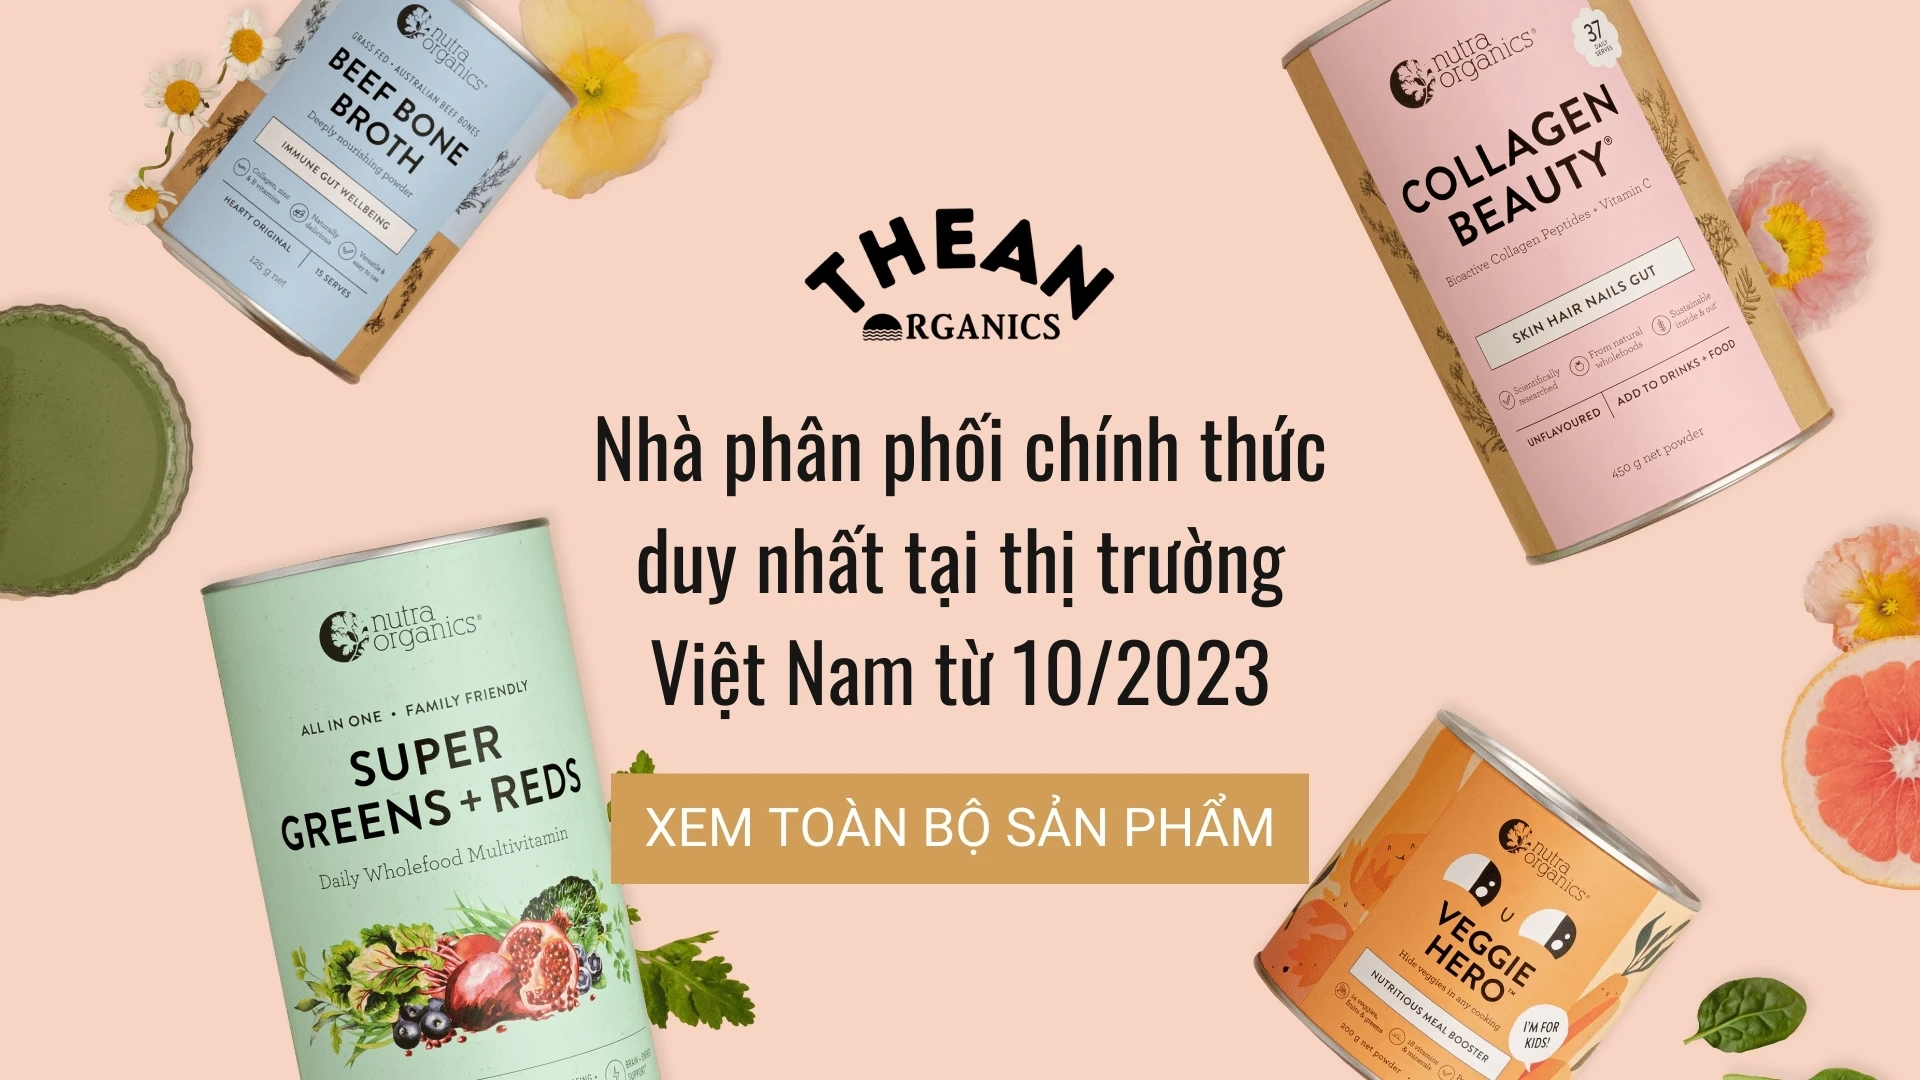 The An chính thức trở thành nhà phân phối duy nhất tại thị trường Việt Nam của Nutra Organics từ tháng 10/2023